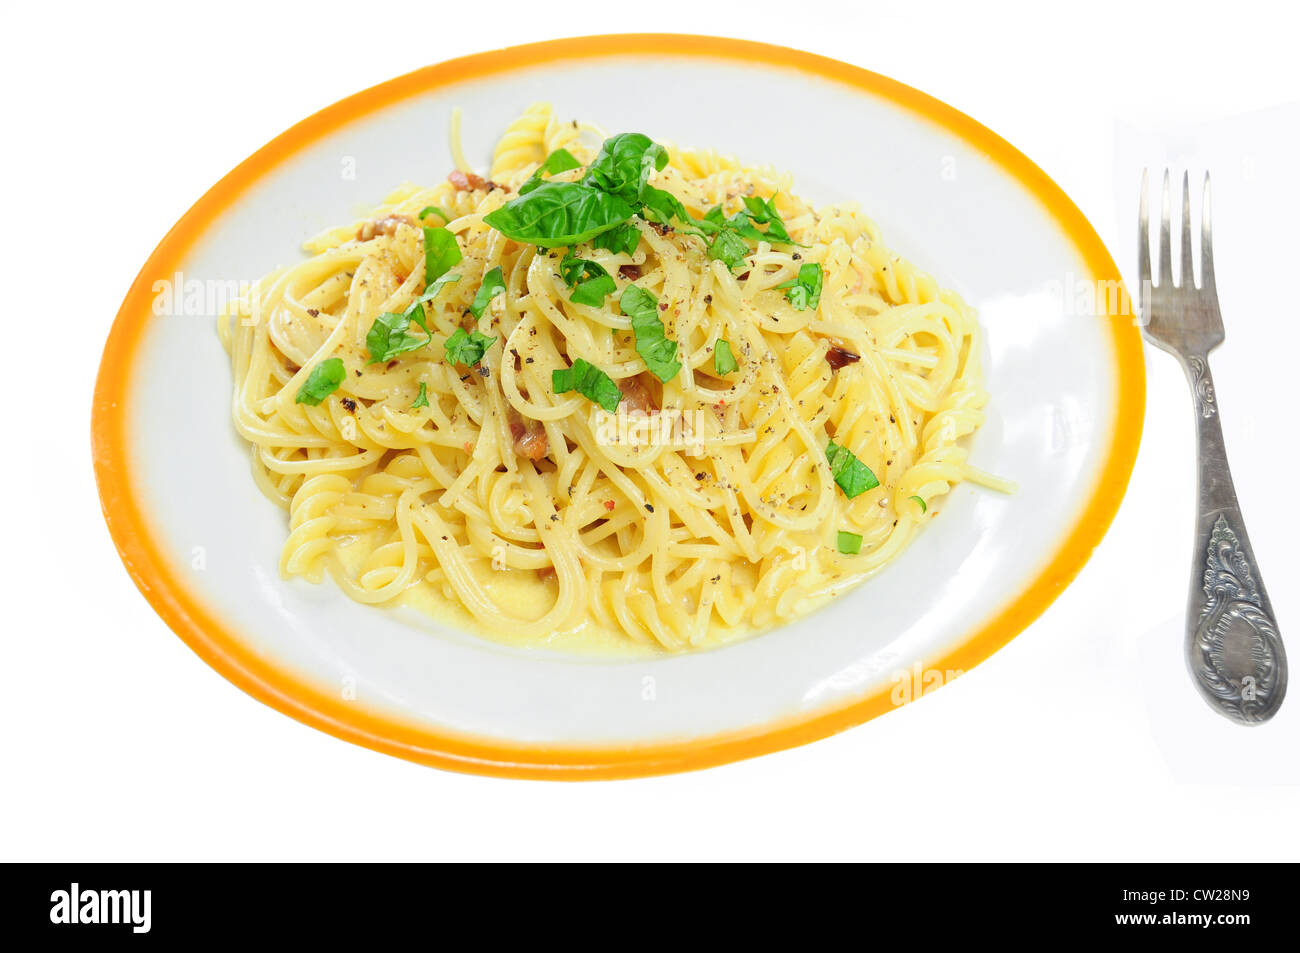 Vue rapprochée de Spaghetti carbonara dans la plaque, isolé Banque D'Images